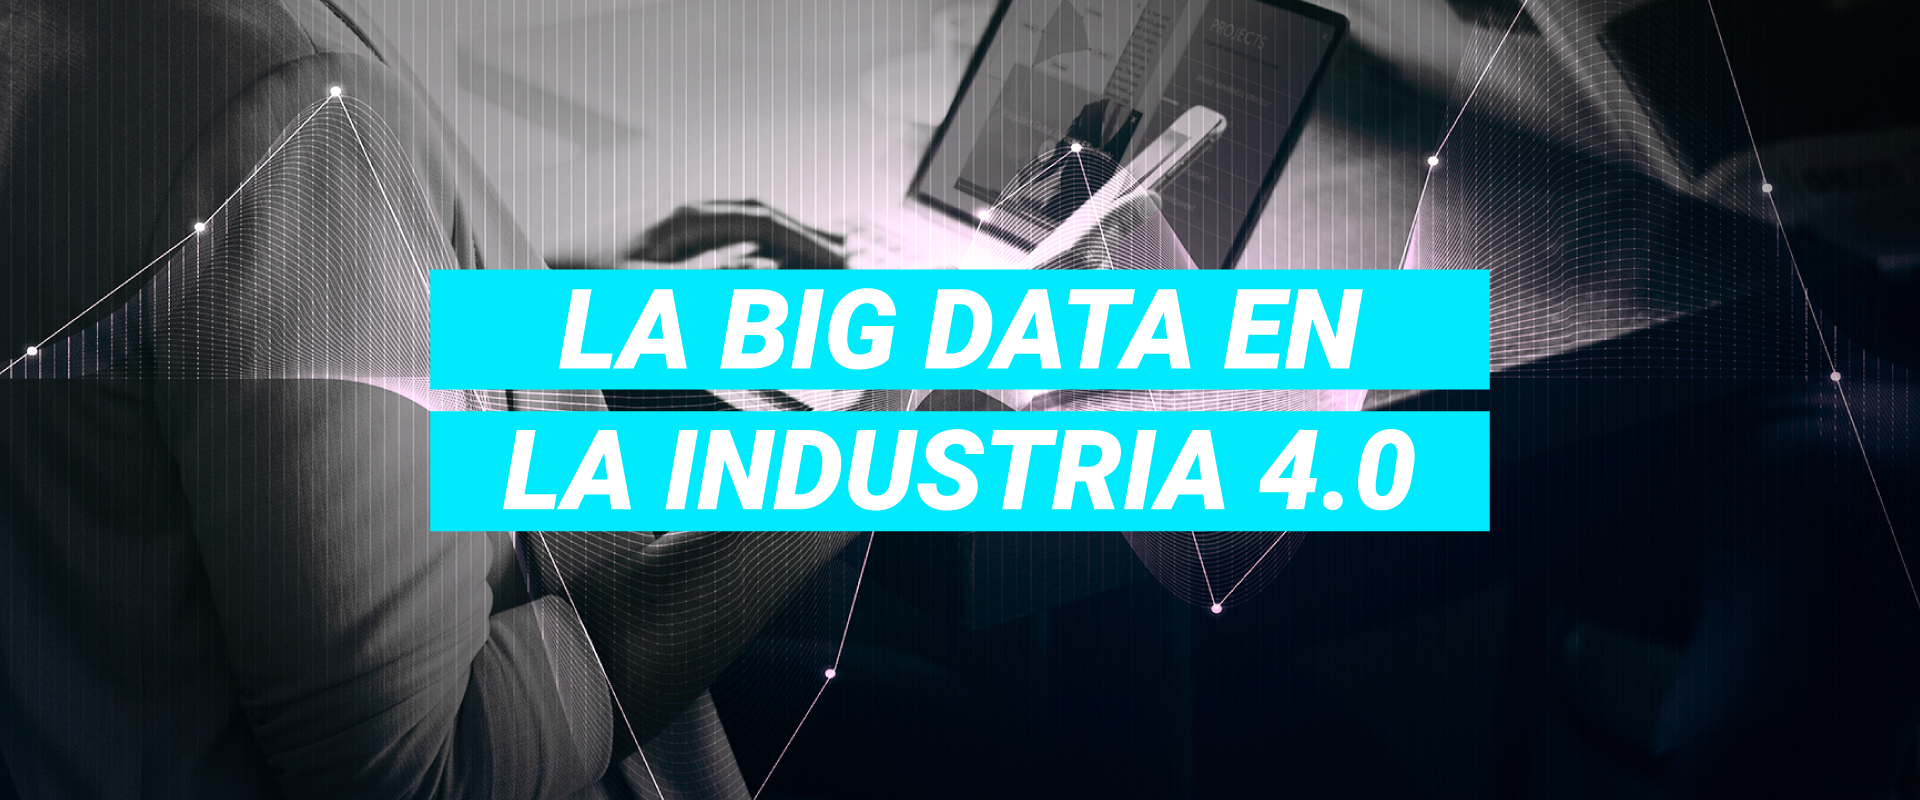 La Big Data en la industria 4.0